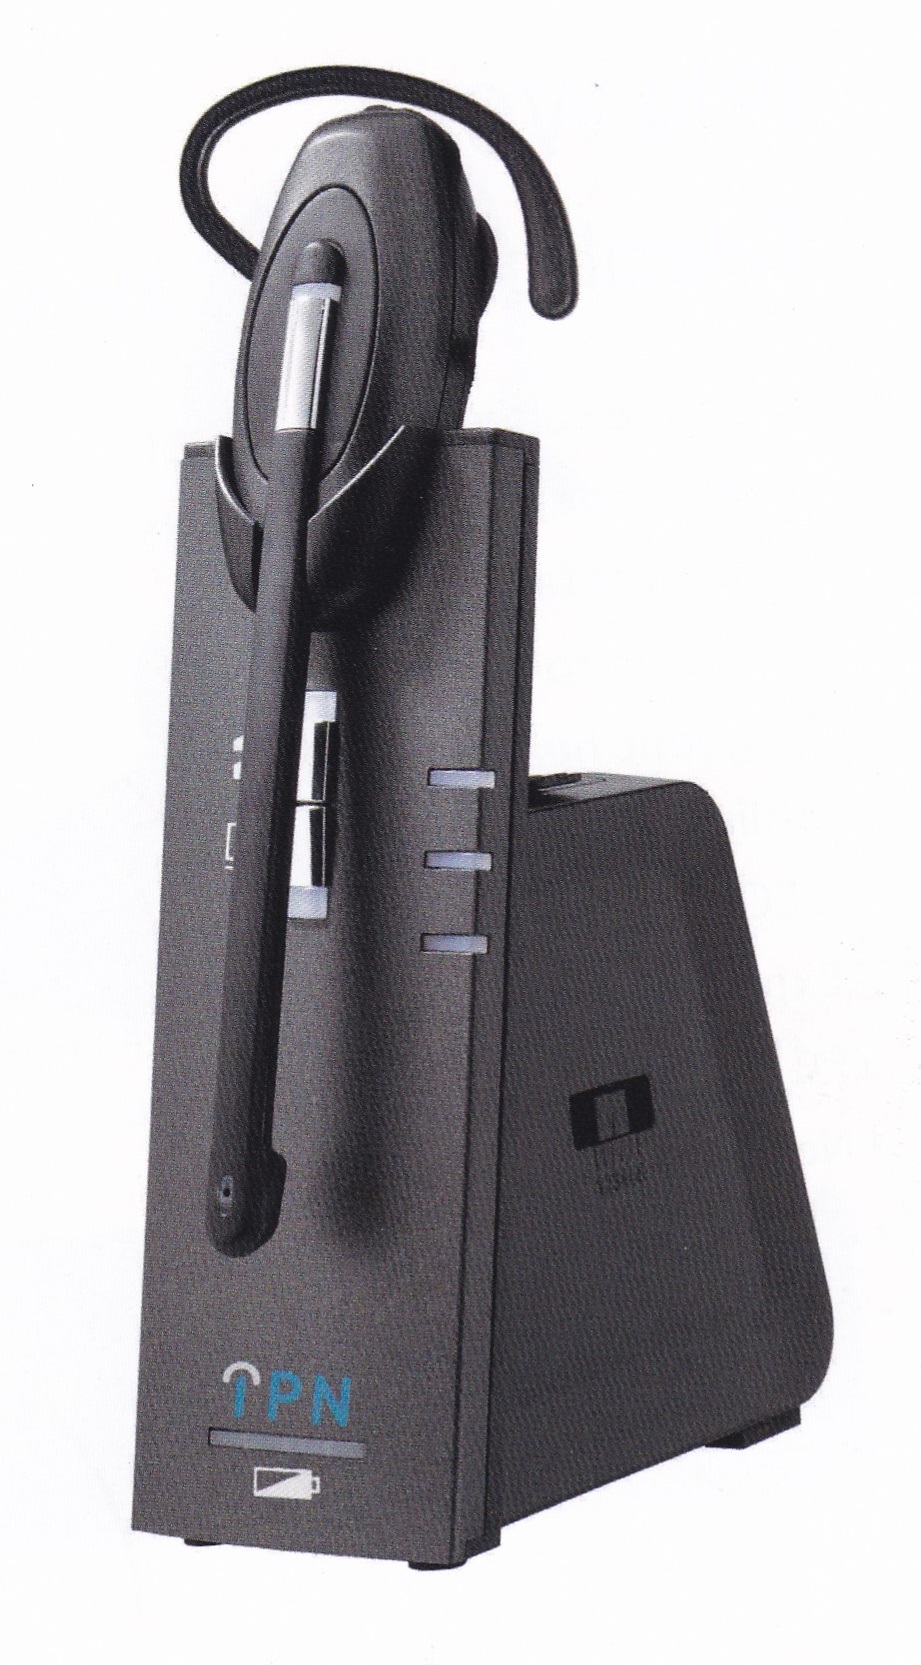 TECHPHONE : MICROCASQUE SANS FIL MOTION 1  RJ9 ET USB (softphones)